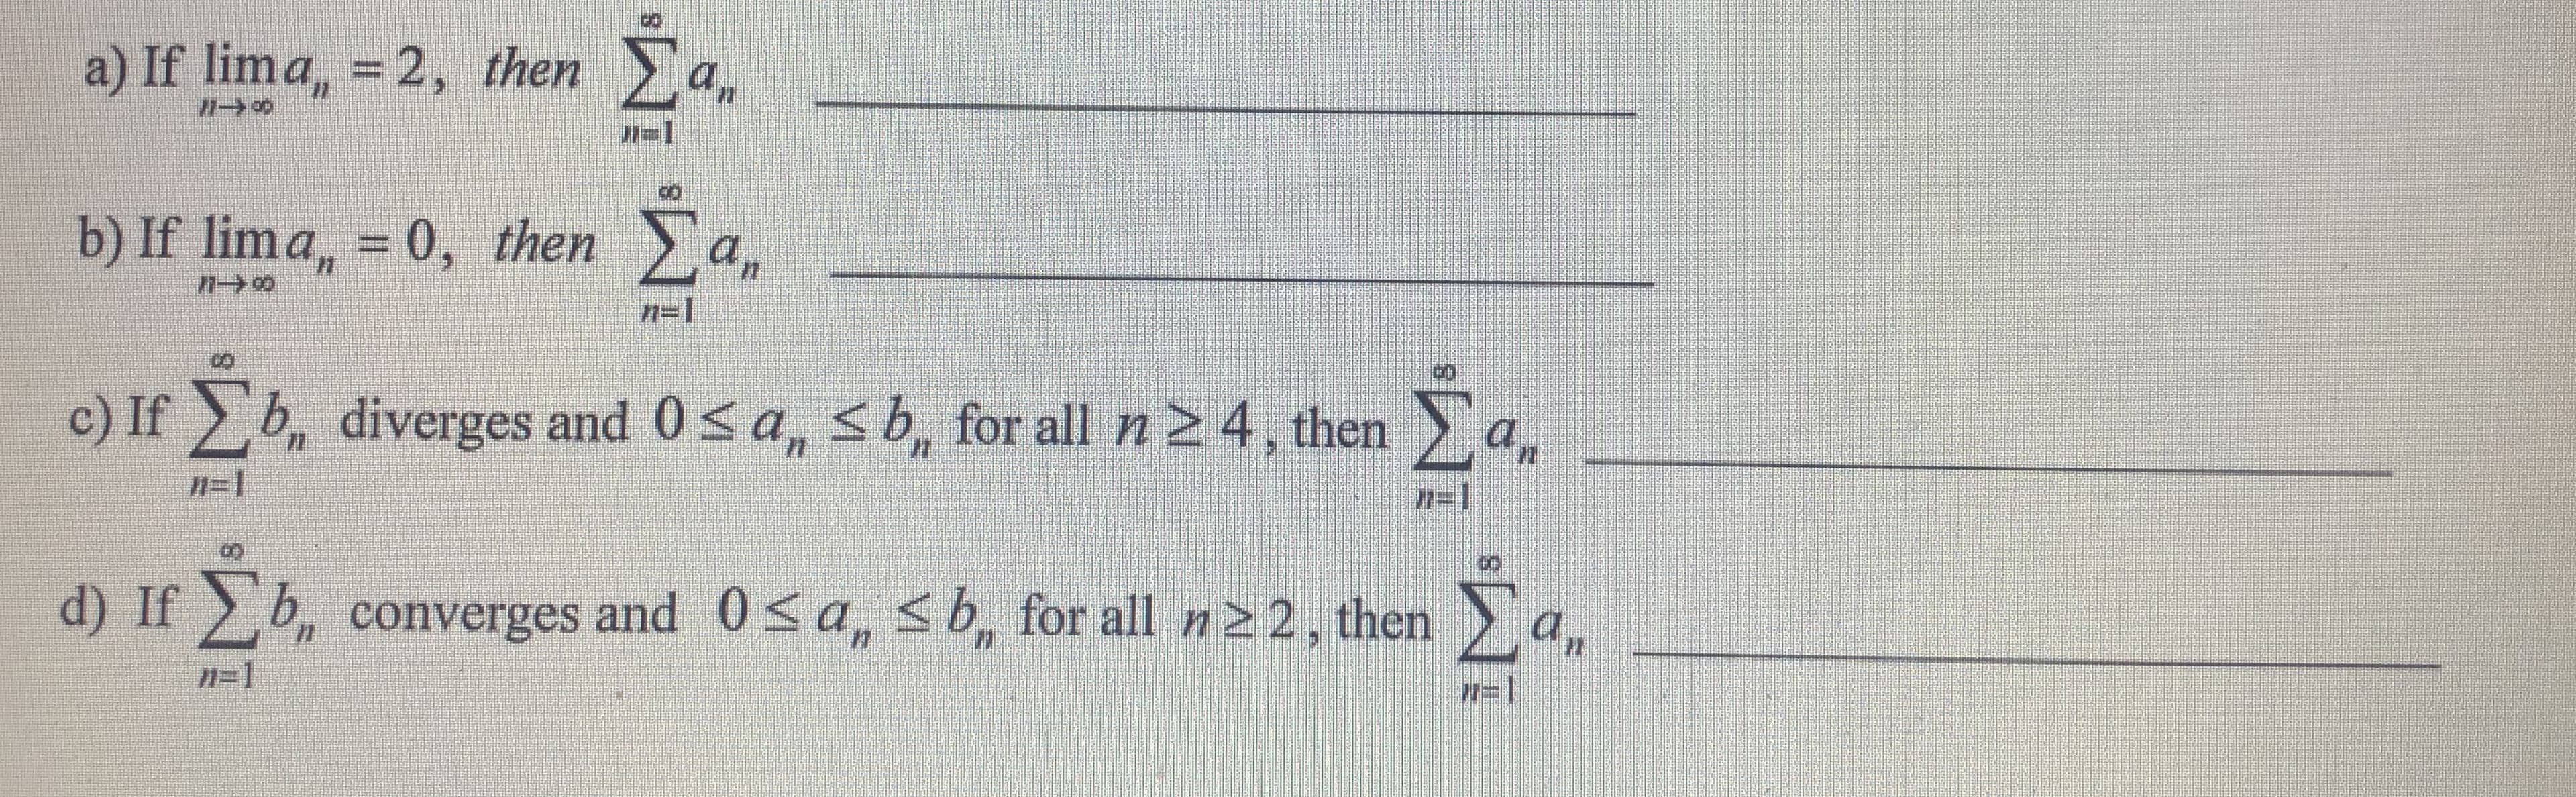 a) If lima, = 2, then a,
%3D
b) If lima, = 0, then a.
%3D
n=1
Σ.
c) If b, diverges and 0<a, sb, for all n 2 4, then
77=1
n=1
an
d) If b, converges and 0< a, sb, for all n22, then
Σ.
n=1
